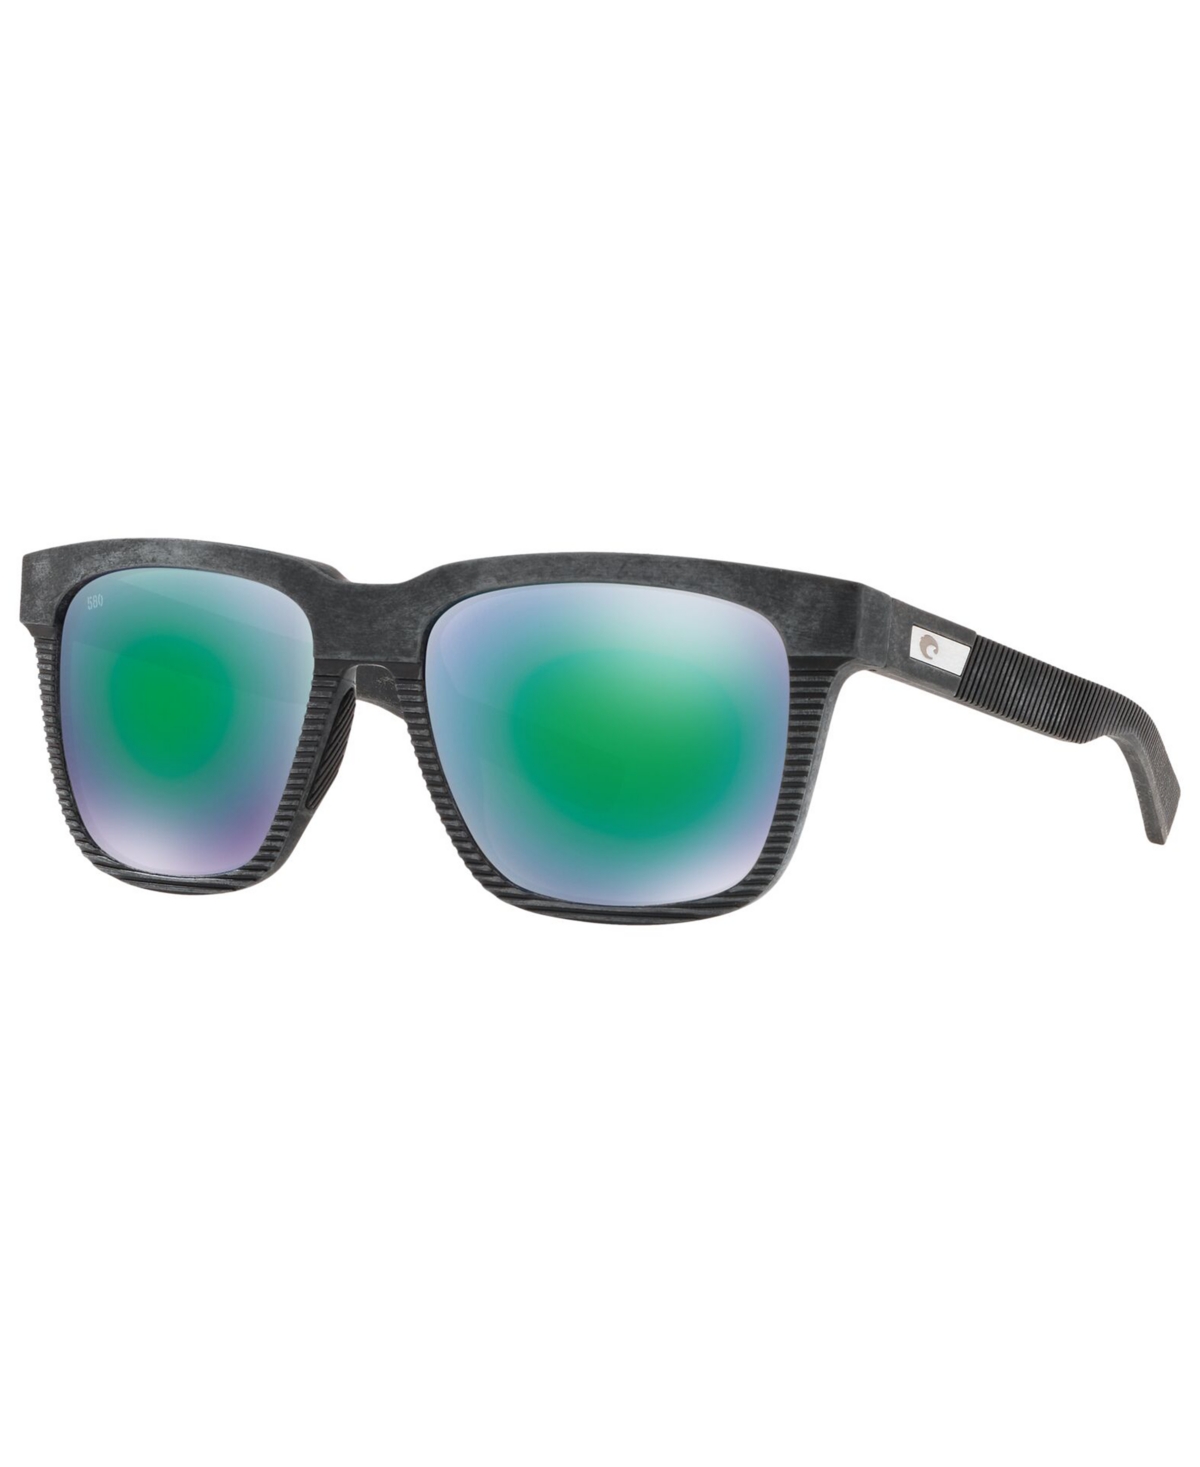 Costa Del Mar Men's Polarized Sunglasses, Pescador 55